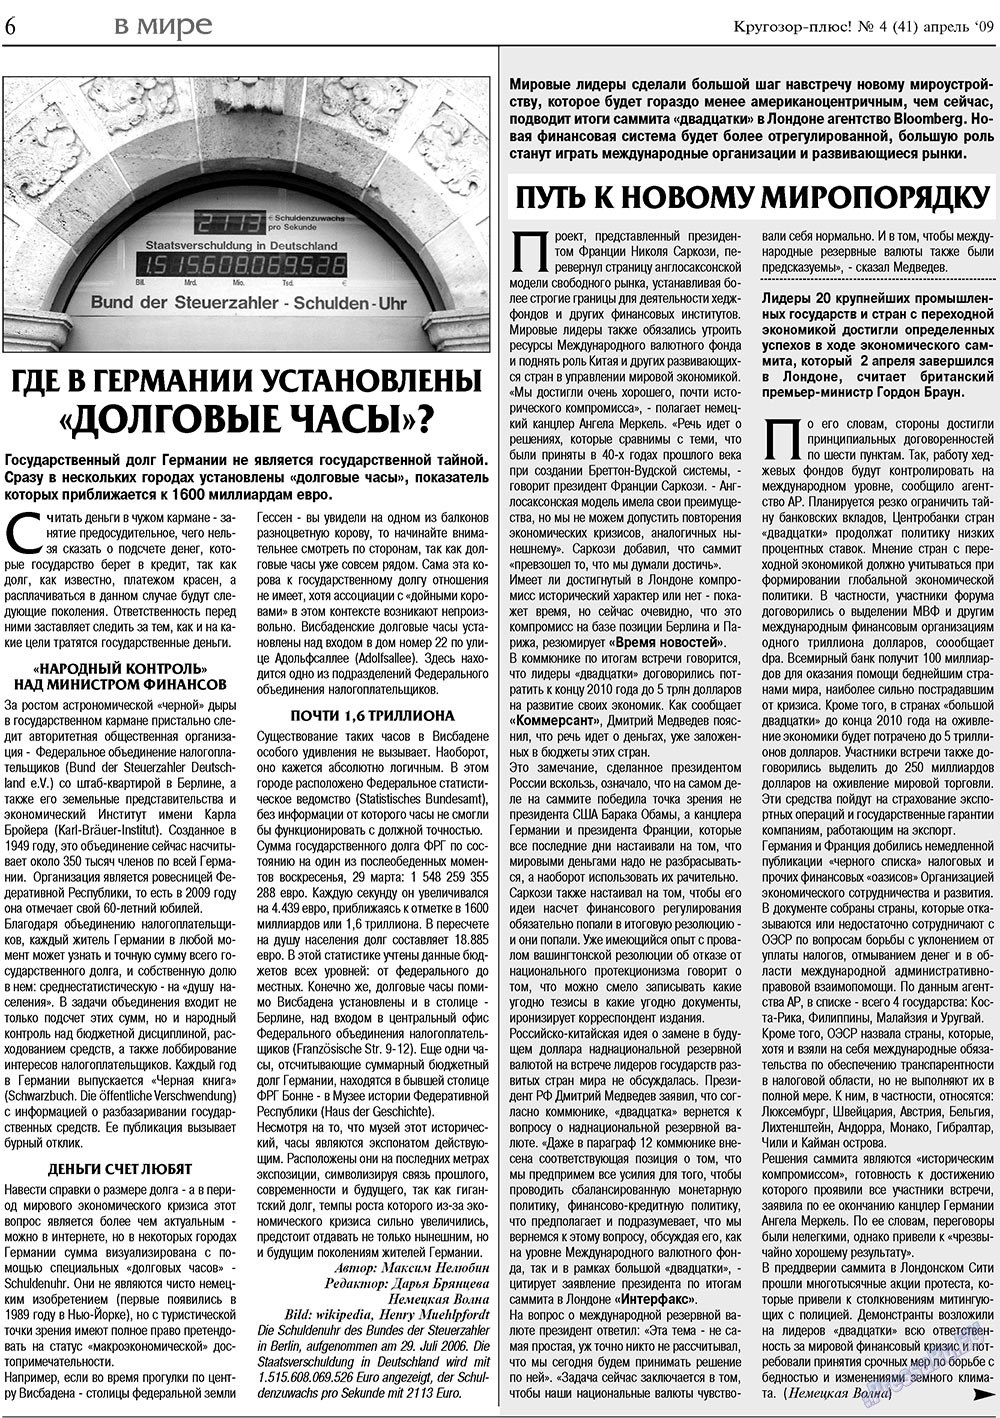 Кругозор плюс!, газета. 2009 №4 стр.6